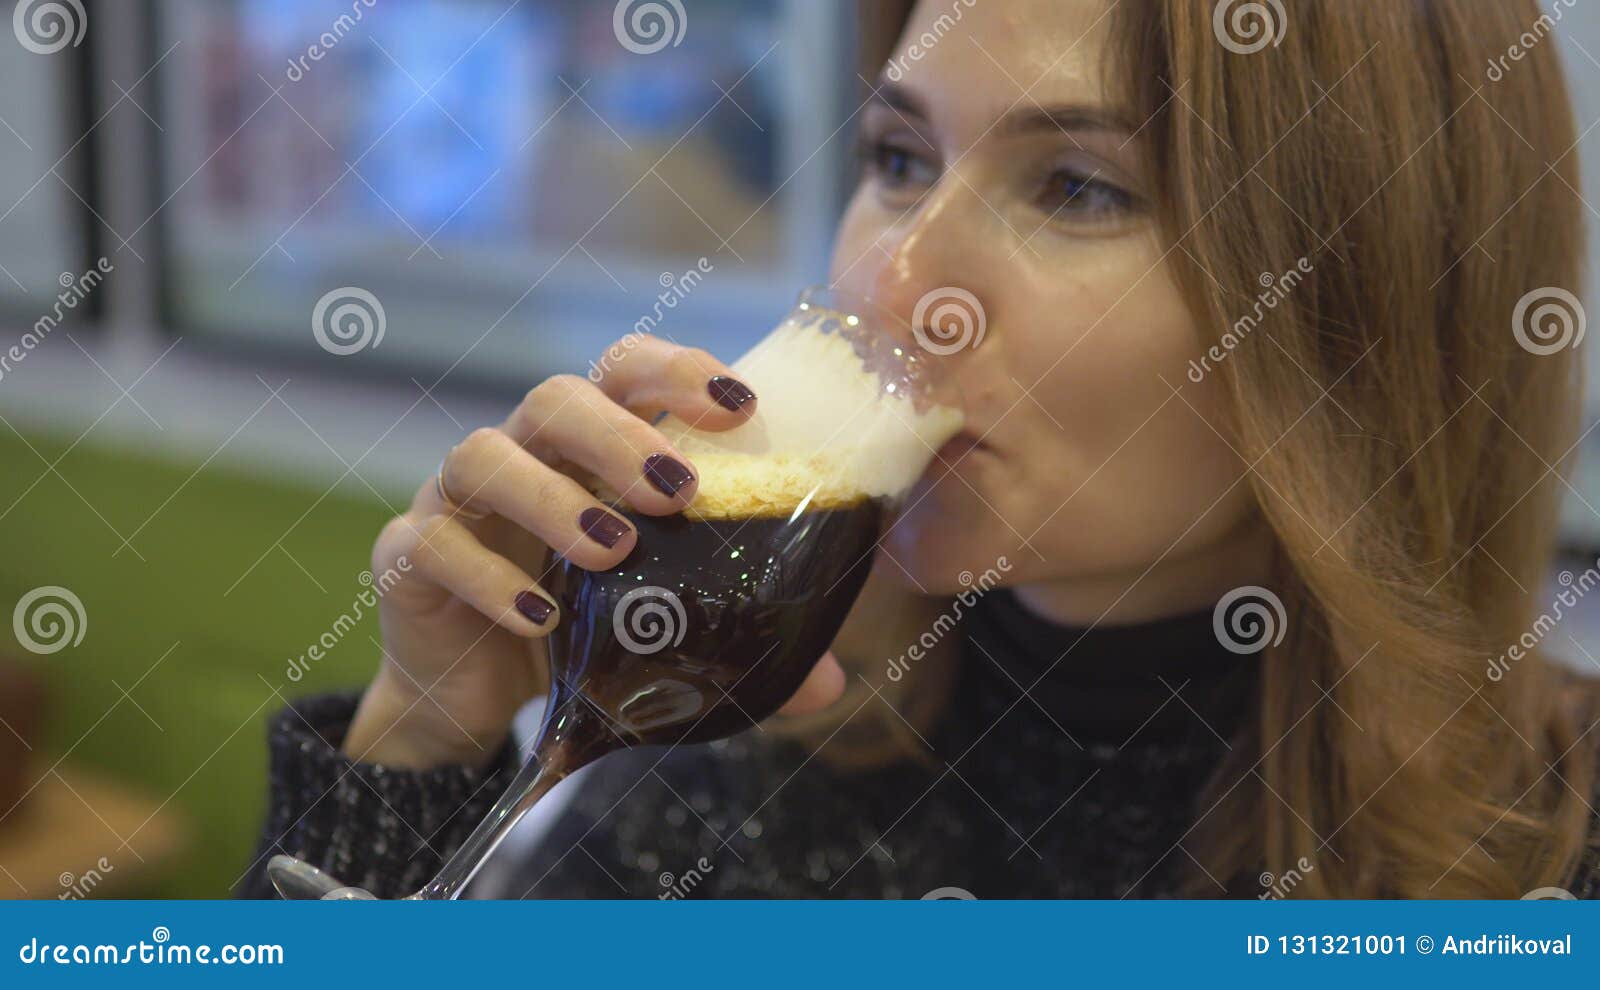 喝咖啡的女人图片大全-喝咖啡的女人高清图片下载-觅知网